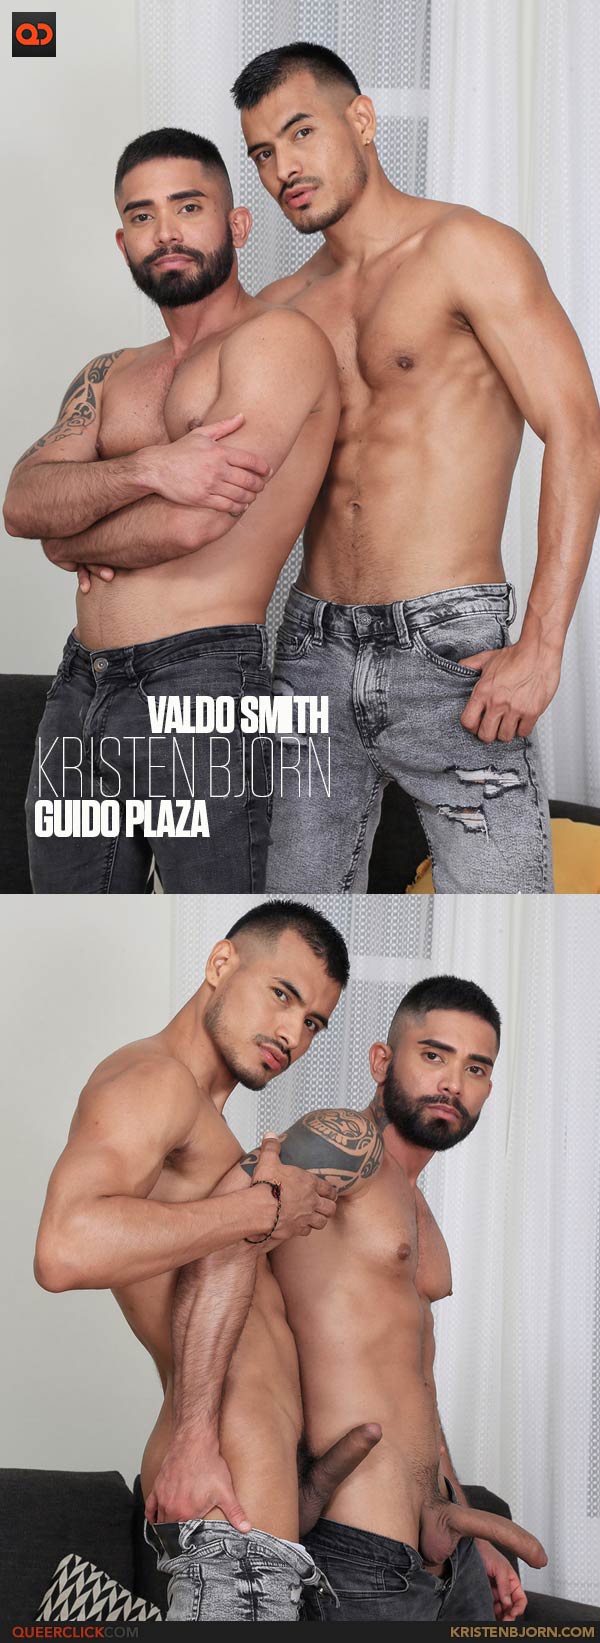 Kristen Bjorn: Valdo Smith and Guido Plaza